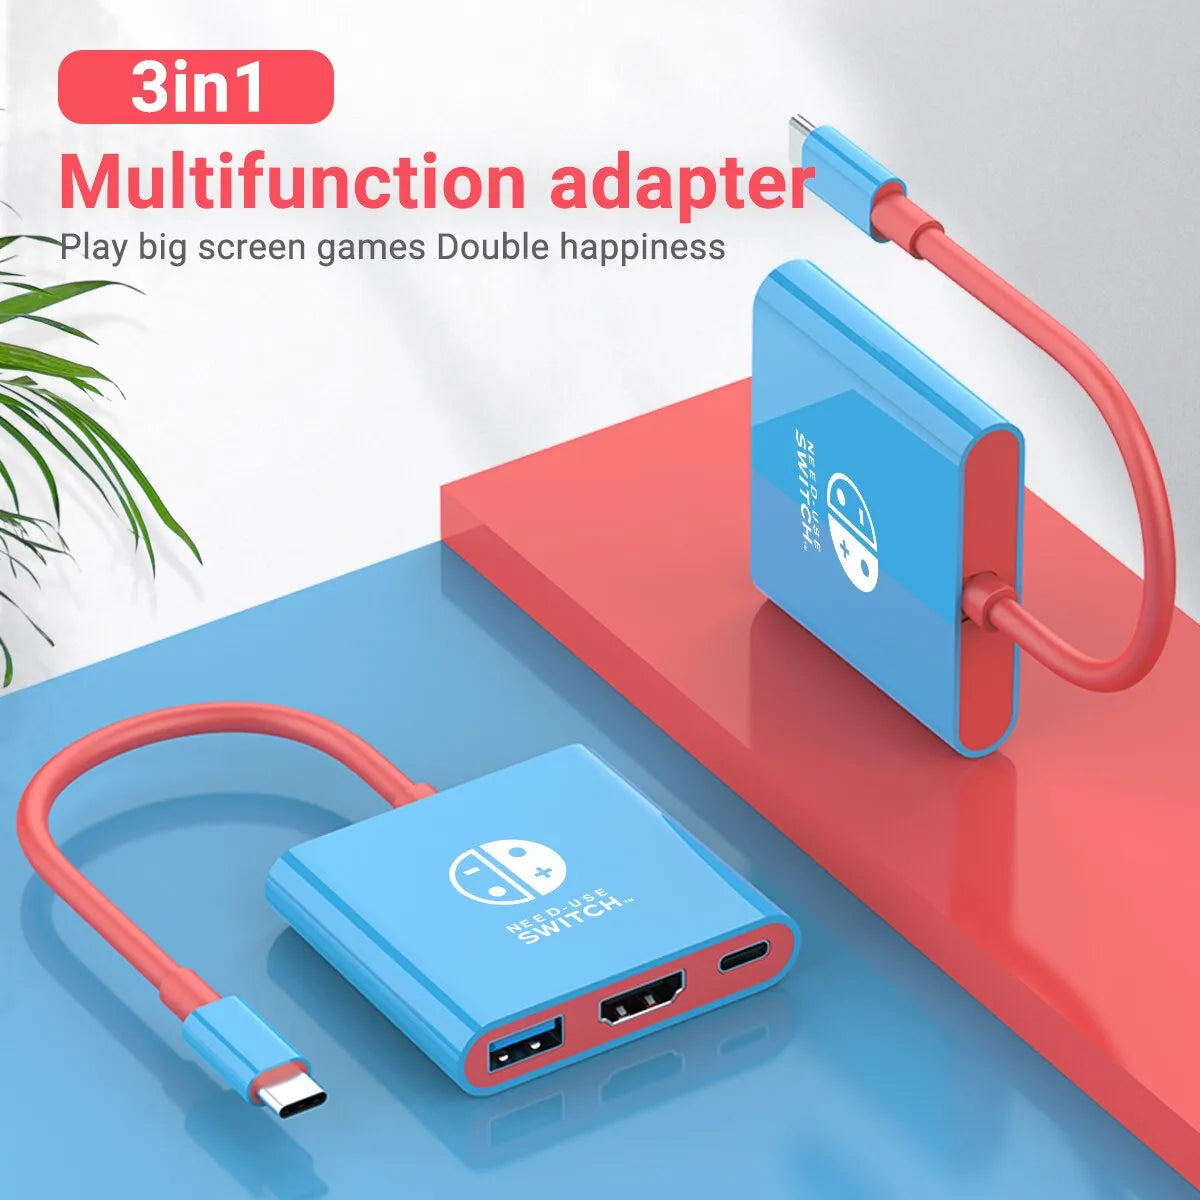 Nintendo Switch Portable Hub: HDMI & USB 3.0 for Seamless Gaming  ourlum.com   